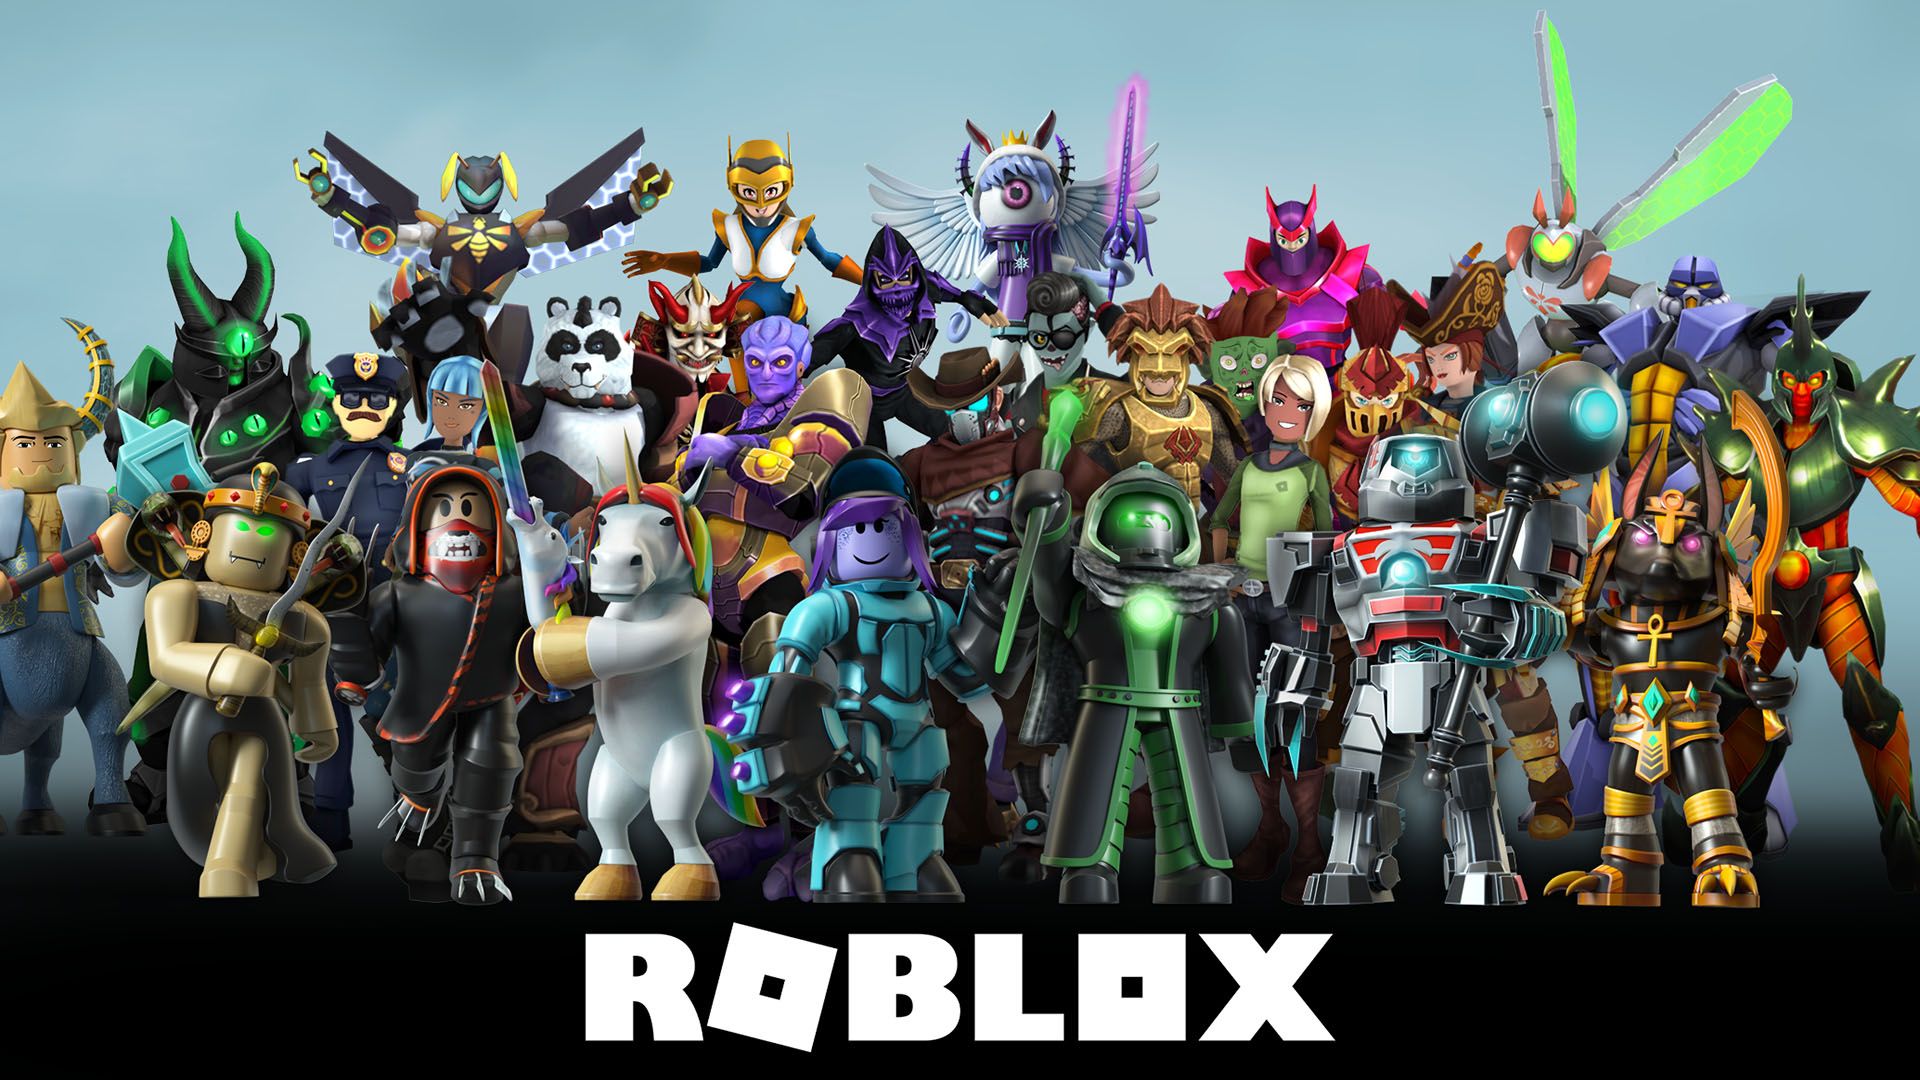 Consigue Robux gratis en Roblox con estos códigos